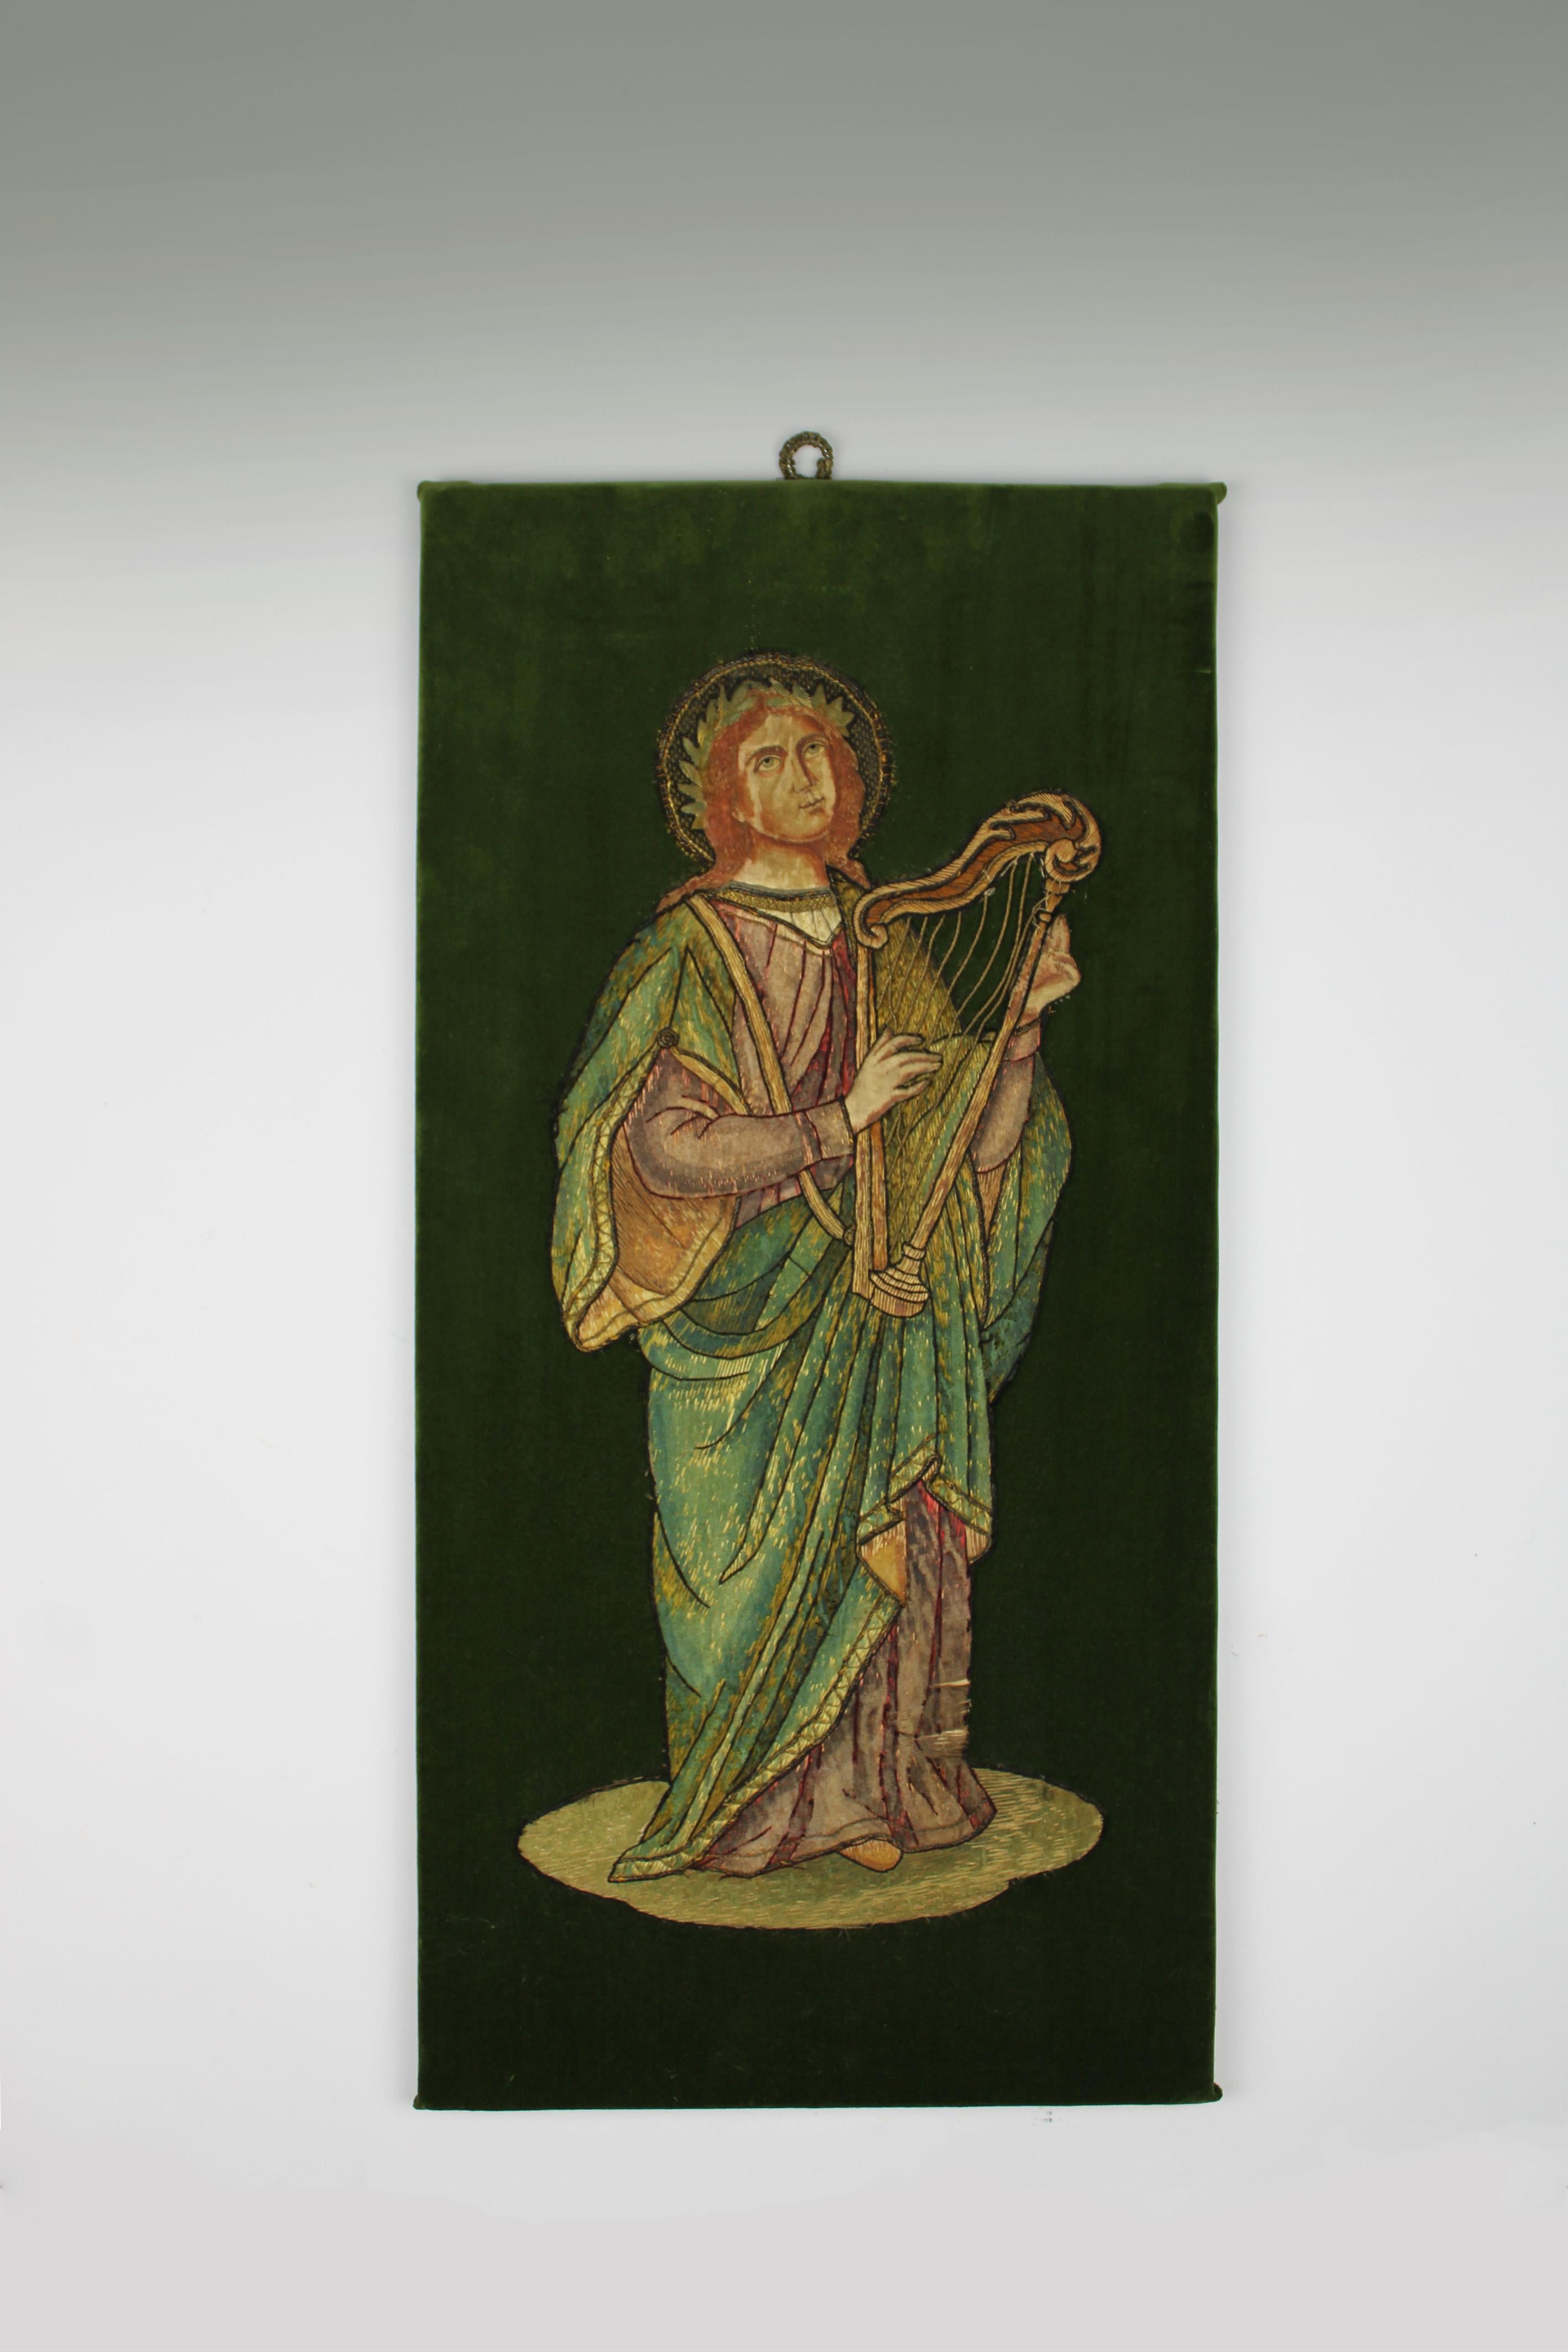 Plongez dans la riche tapisserie du XVIIe siècle grâce à notre exquise image brodée représentant le roi David à la harpe. Méticuleusement réalisée avec des fils de soie, montée sur un velours vert luxuriant, cette pièce témoigne de l'habileté et de